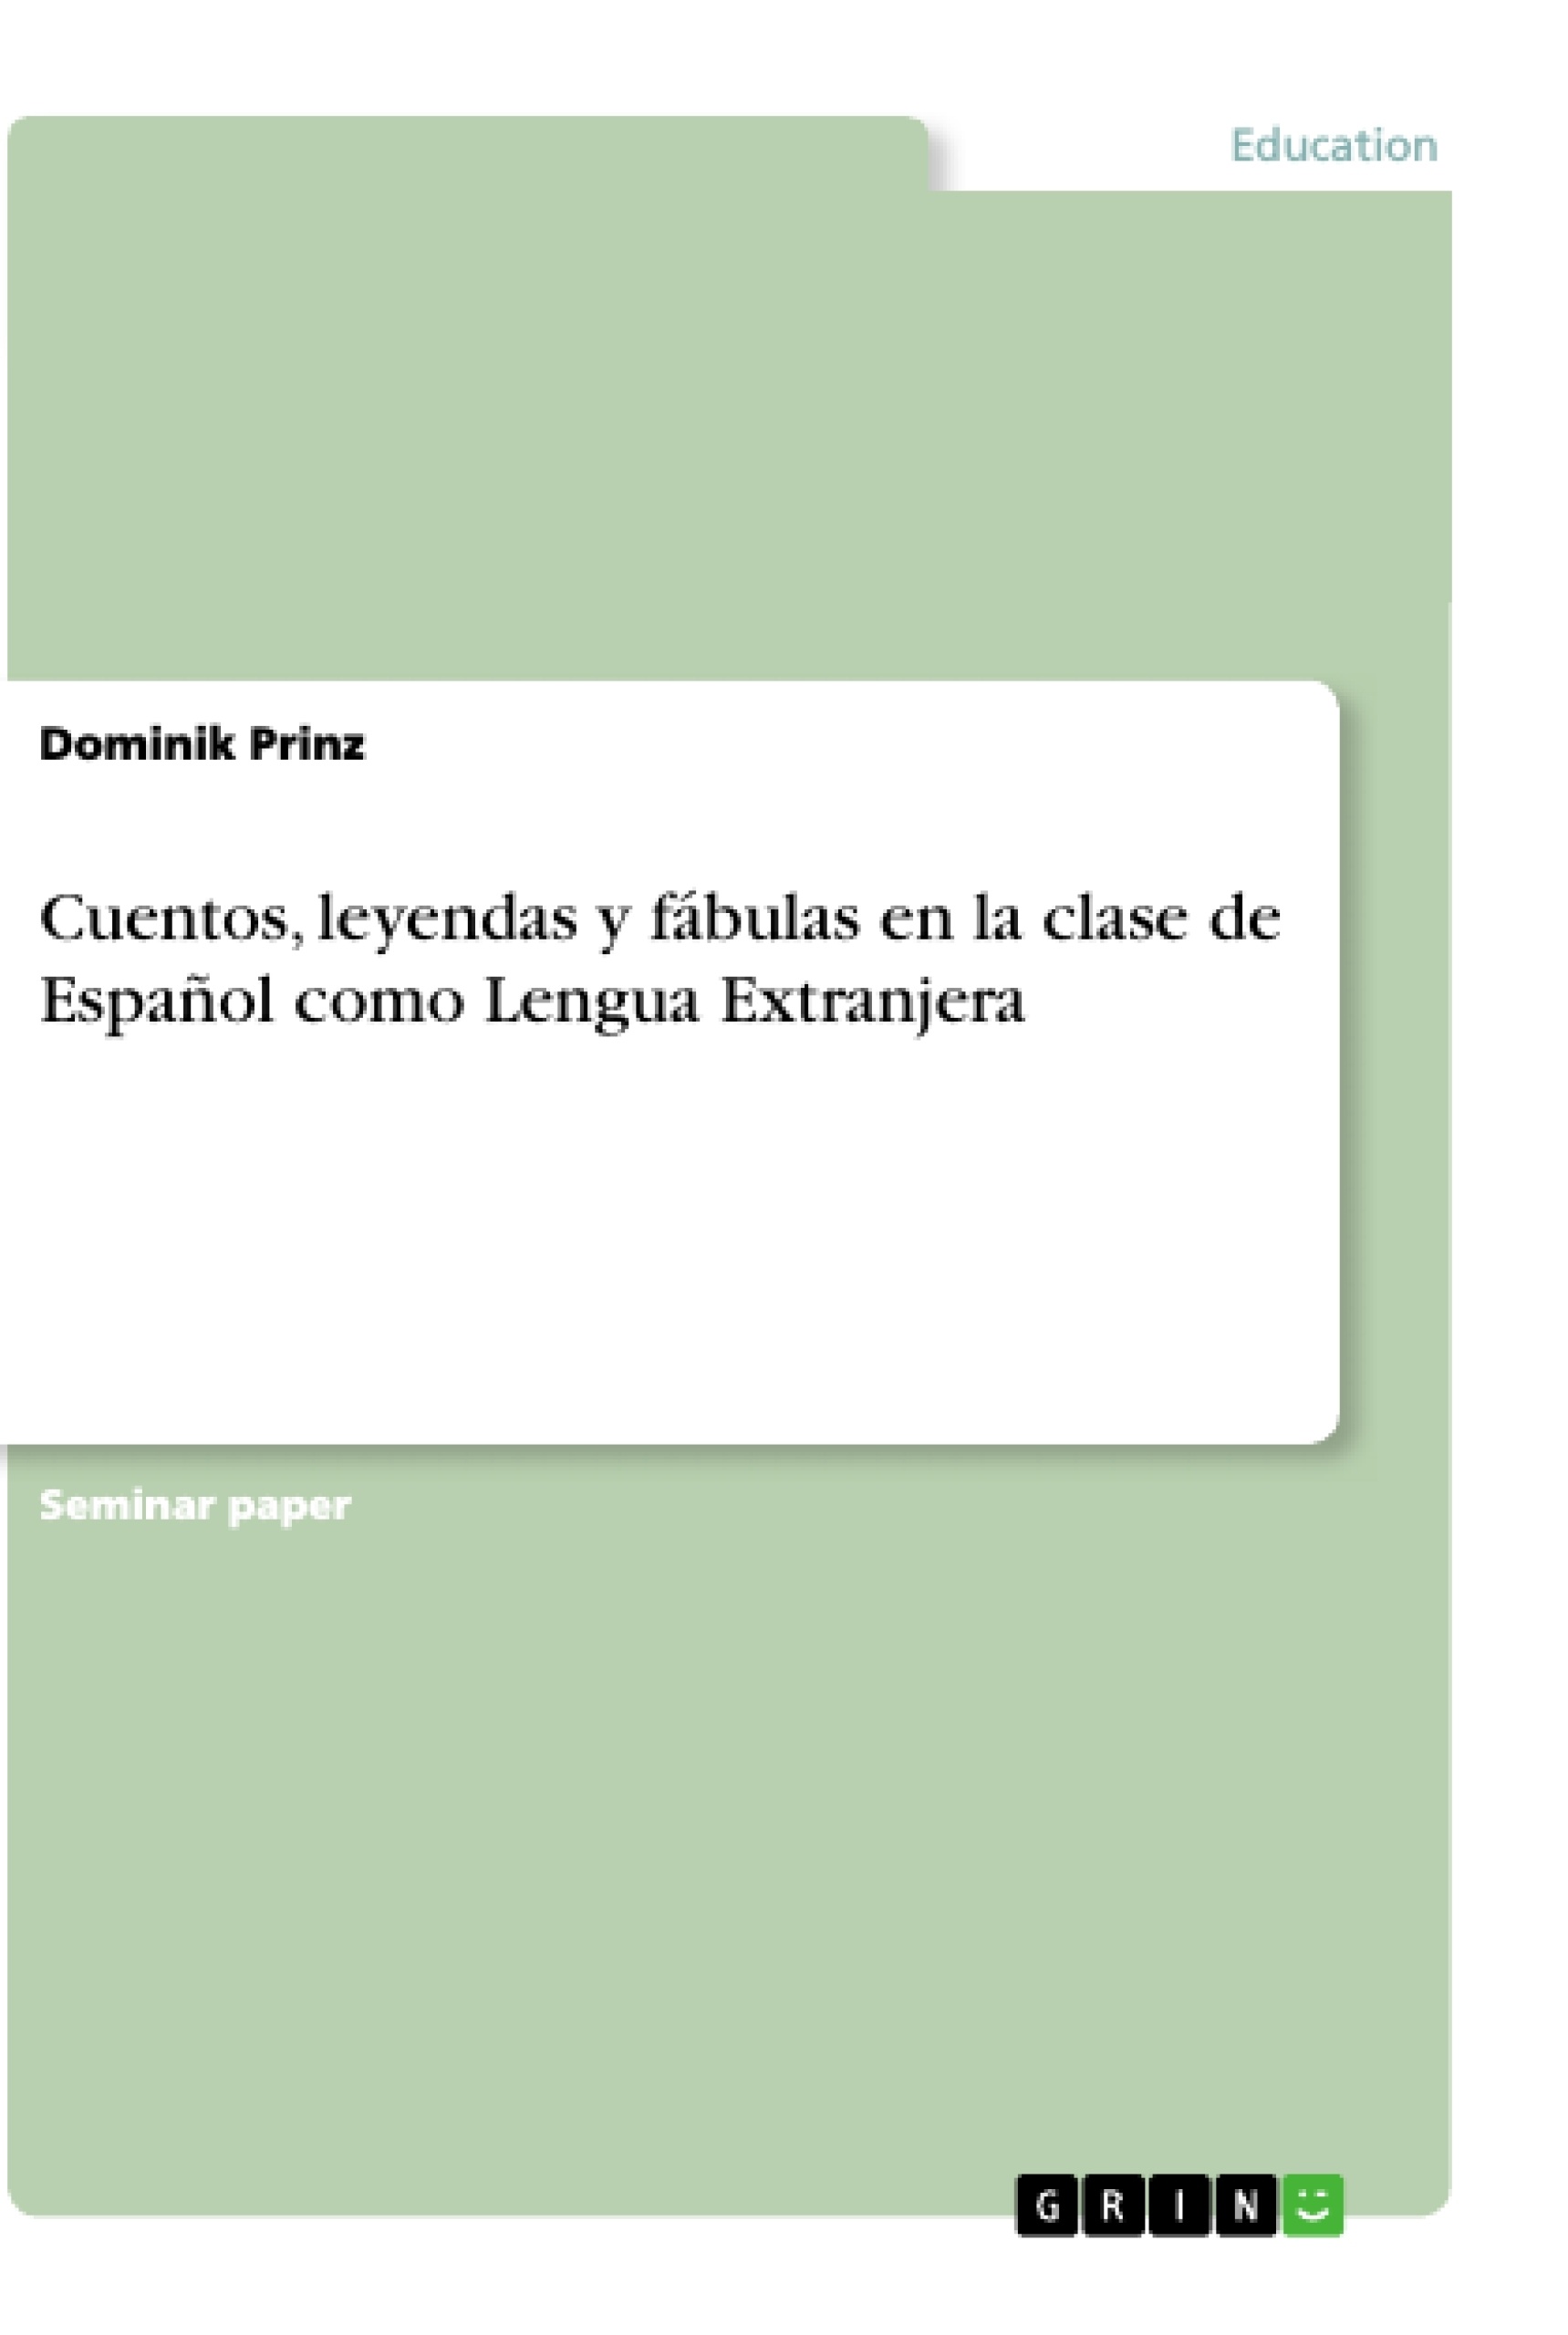 Título: Cuentos, leyendas y fábulas en la clase de Español como Lengua Extranjera